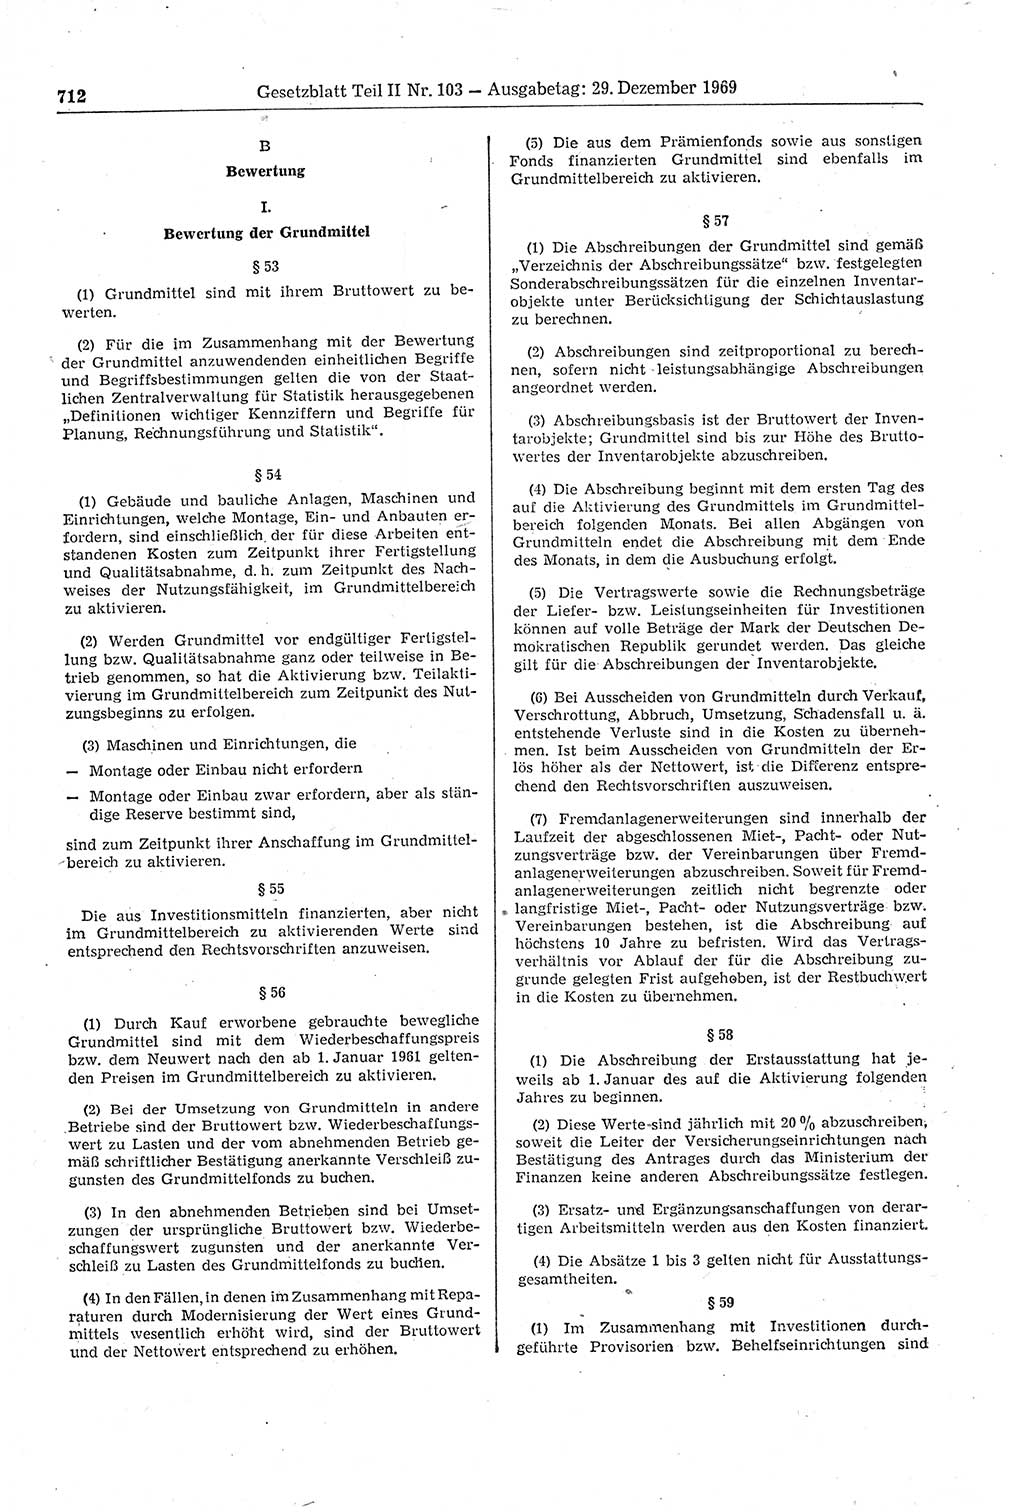 Gesetzblatt (GBl.) der Deutschen Demokratischen Republik (DDR) Teil ⅠⅠ 1969, Seite 712 (GBl. DDR ⅠⅠ 1969, S. 712)